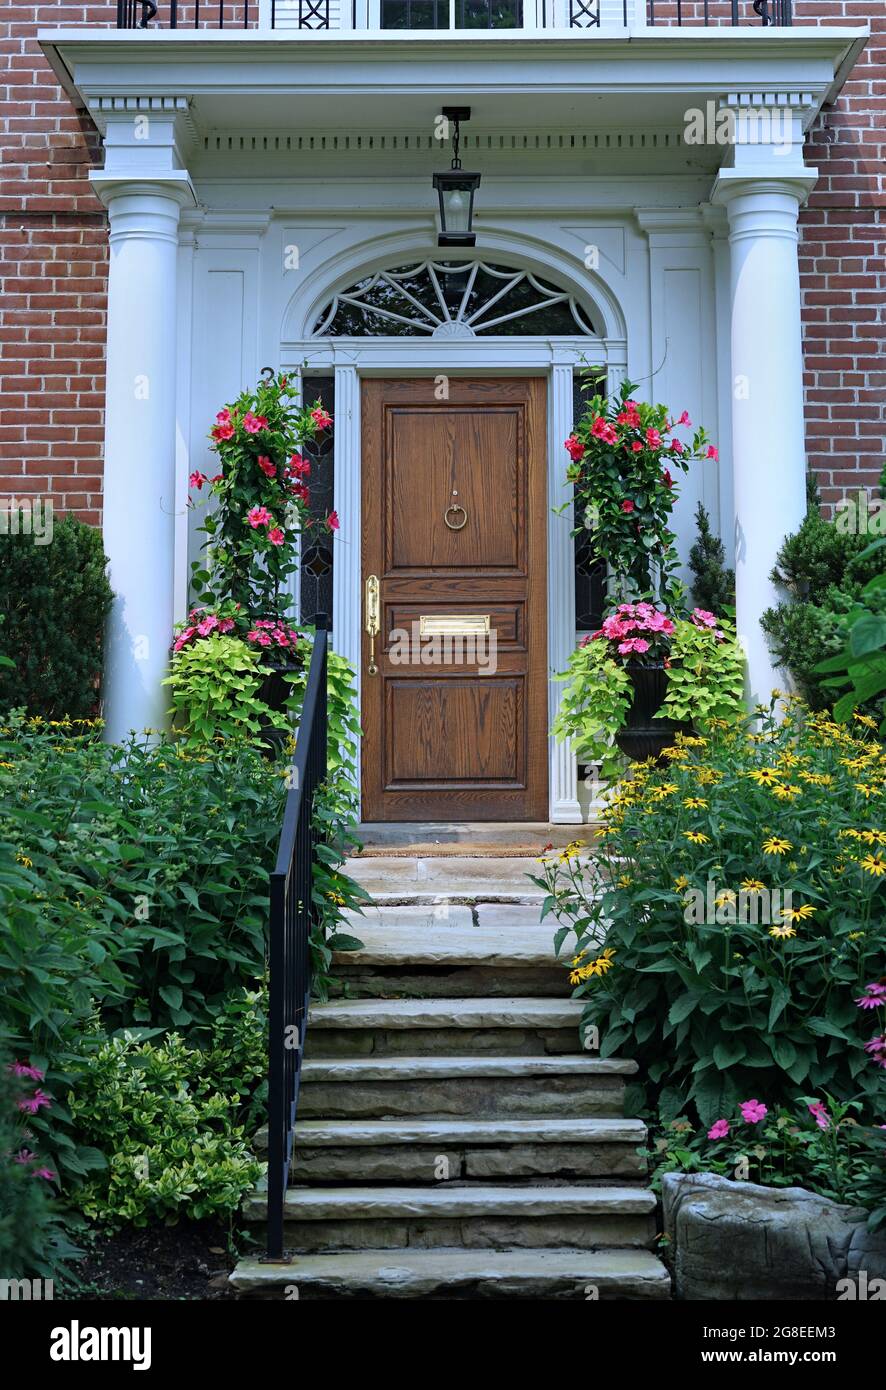 Entrée portique avec porte avant élégante en bois de grain entourée de fleurs d'été colorées Banque D'Images